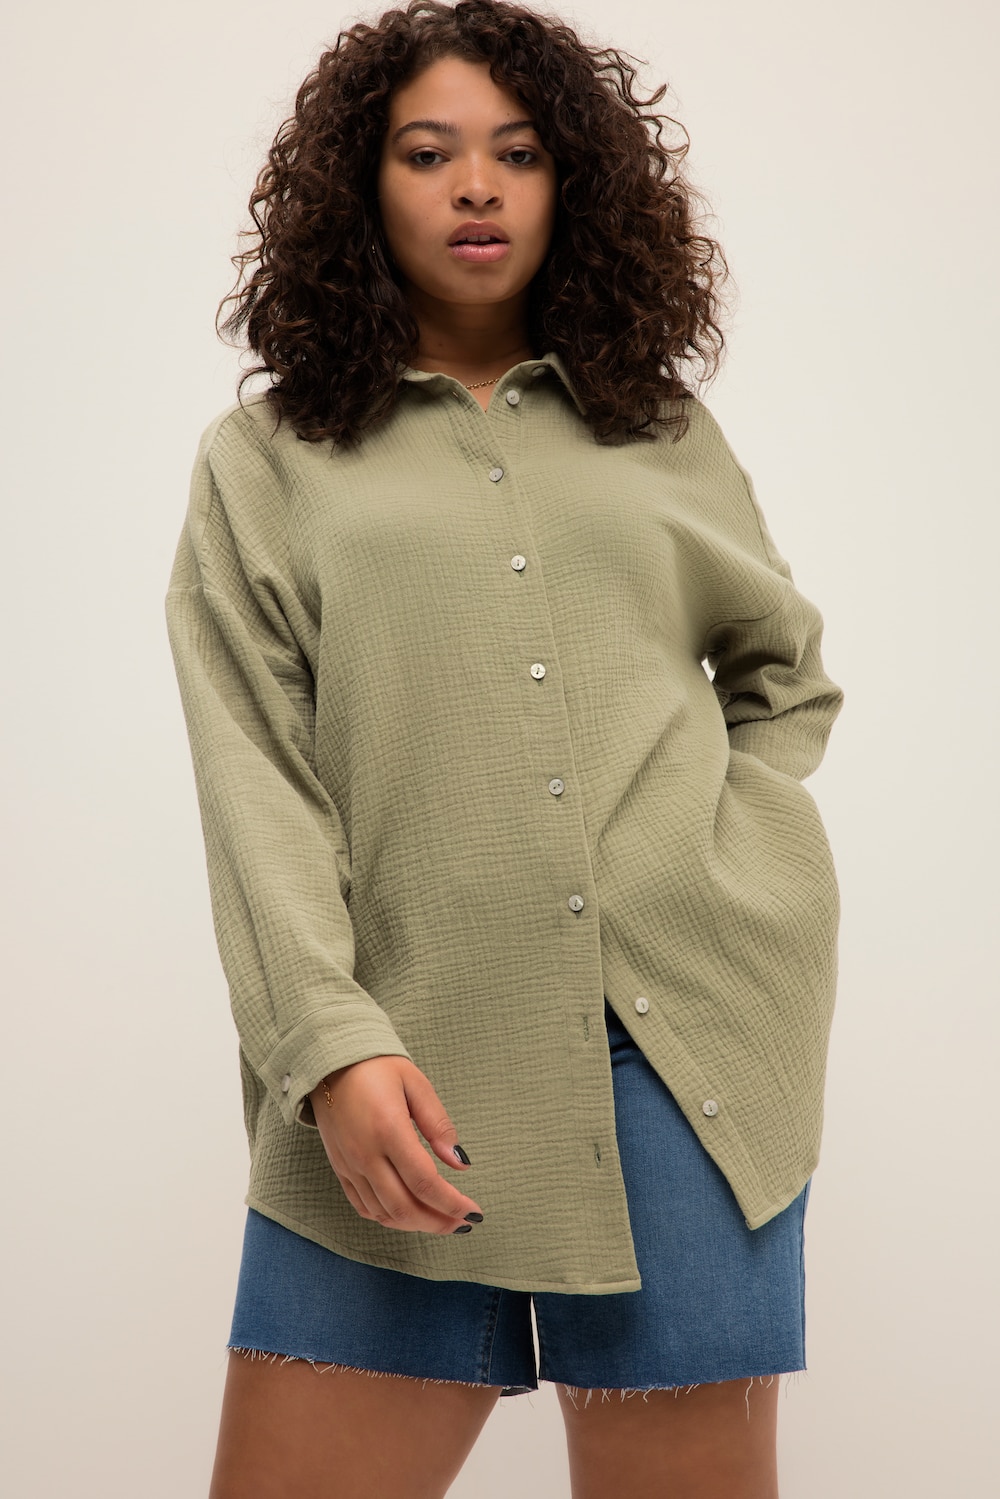 Grote Maten mousseline blouse, Dames, groen, Maat: 58/60, Katoen, Studio Untold